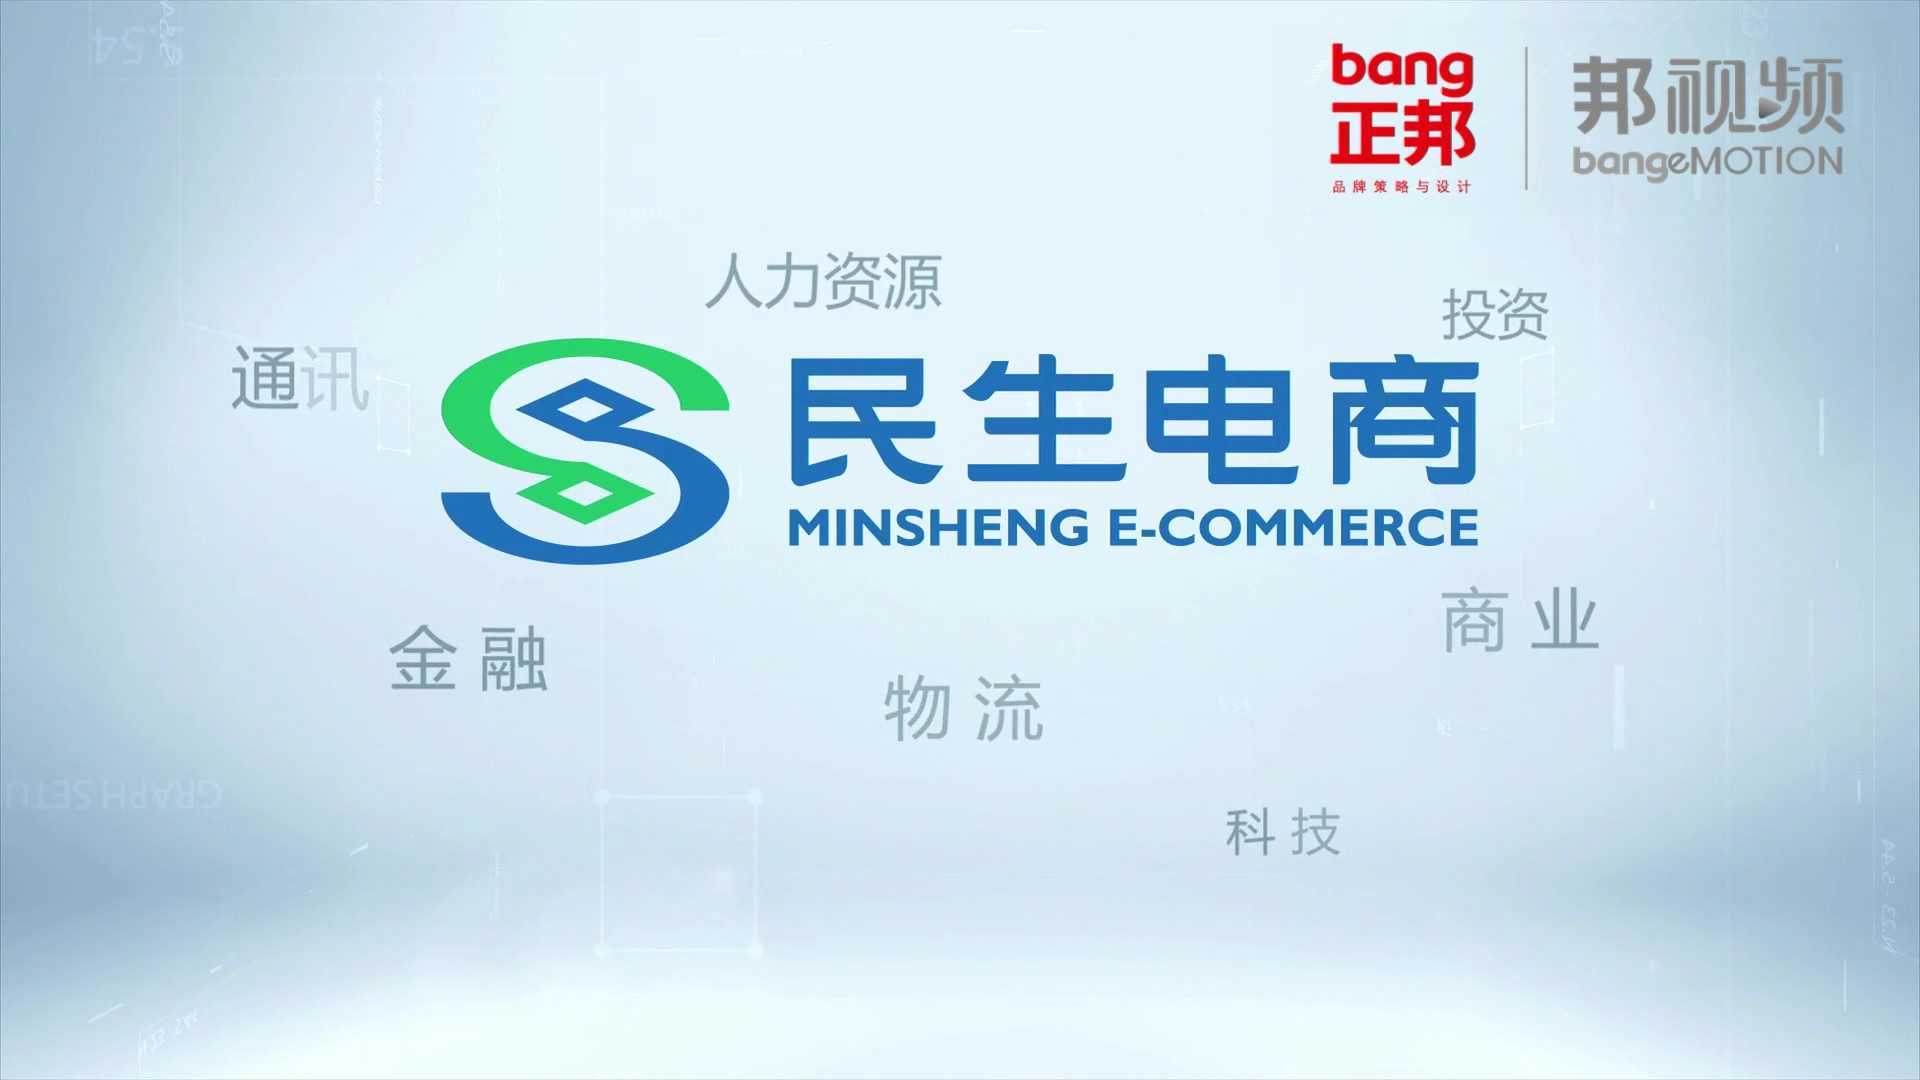 中国民生银行-民生电商-宣传片-品牌宣传片-金融行业